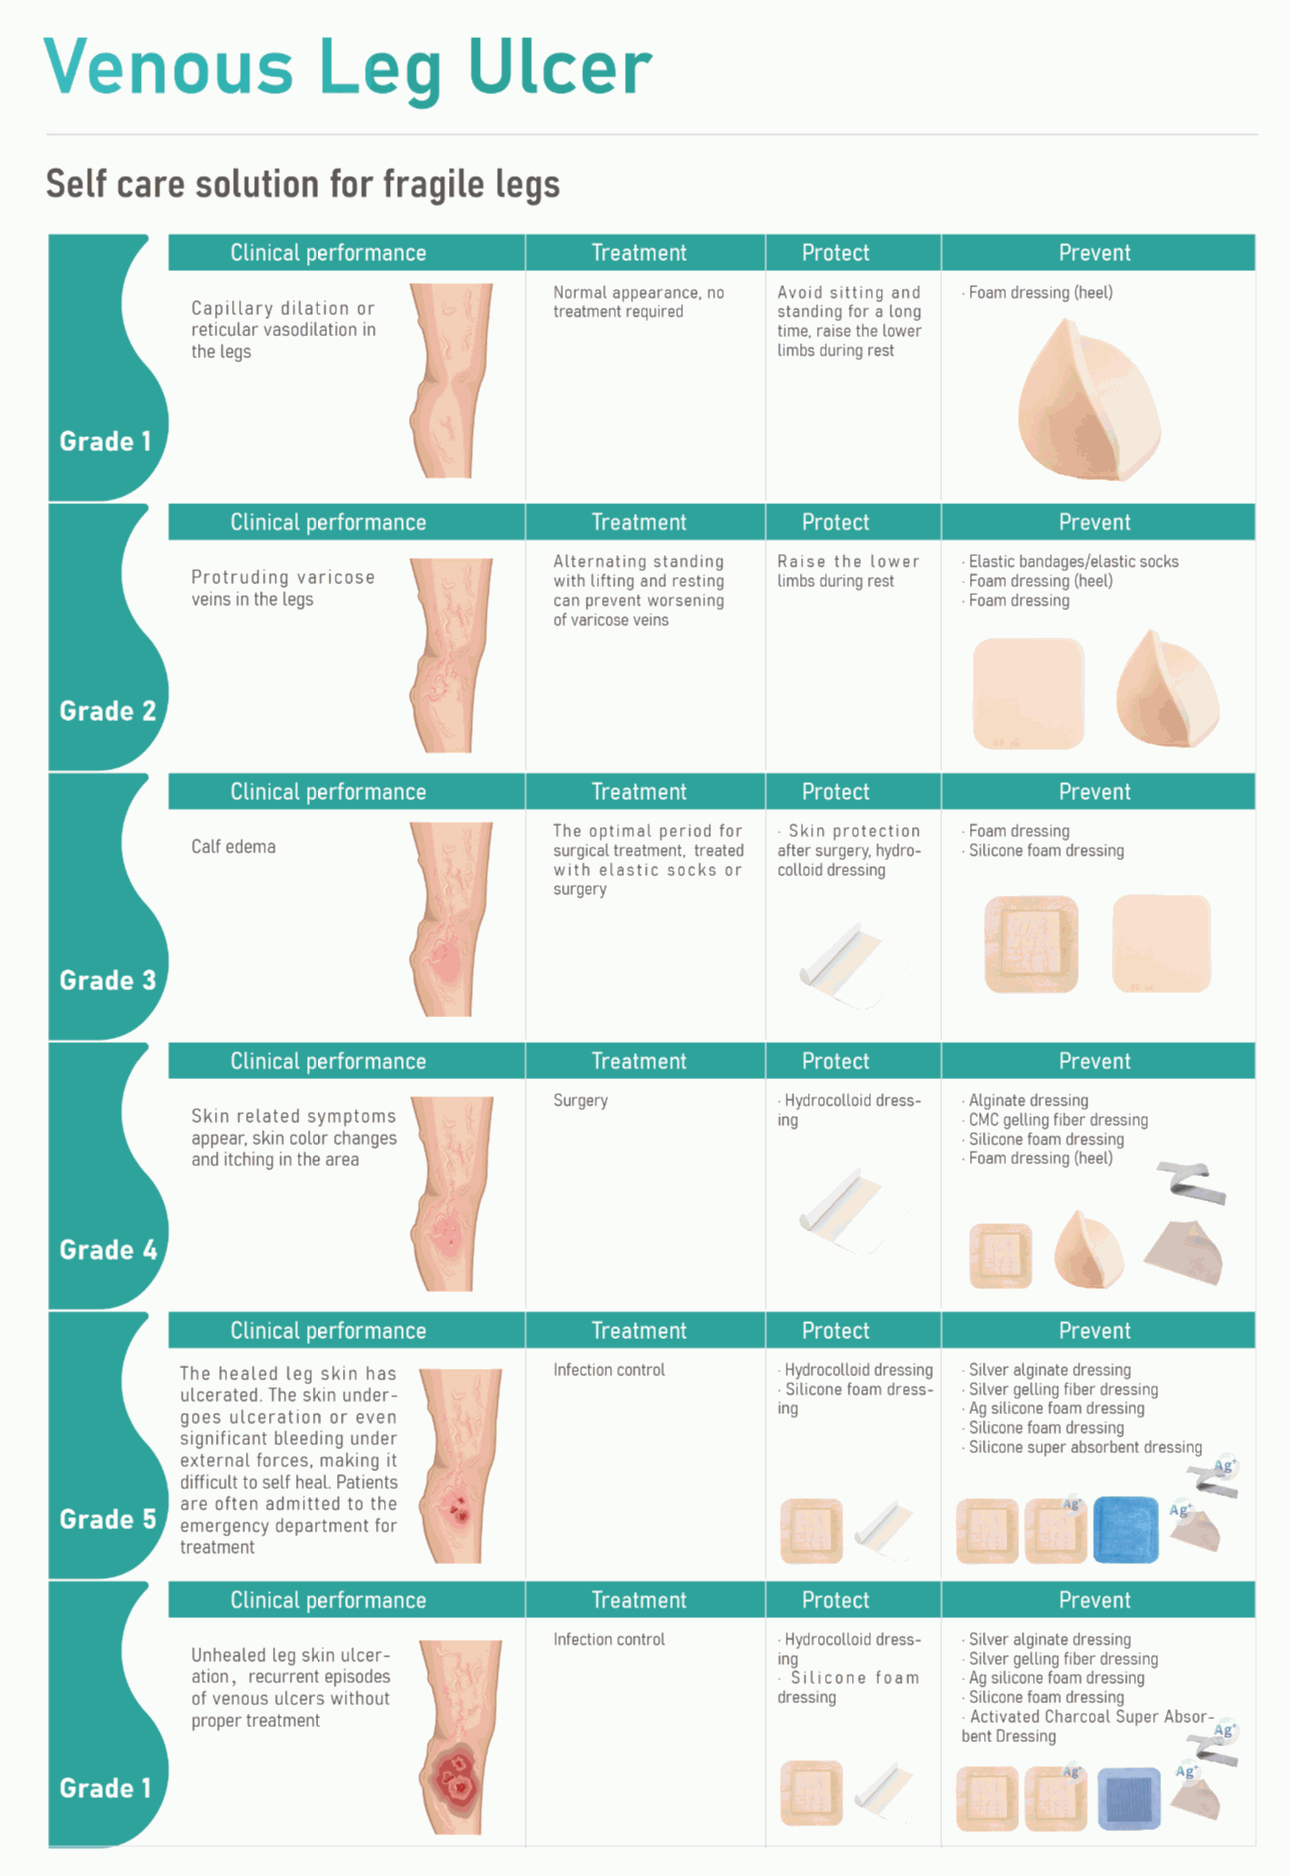 الغوص العميق في علاج قرحة الساق الوريدية مع ضمادات العناية بالجروح